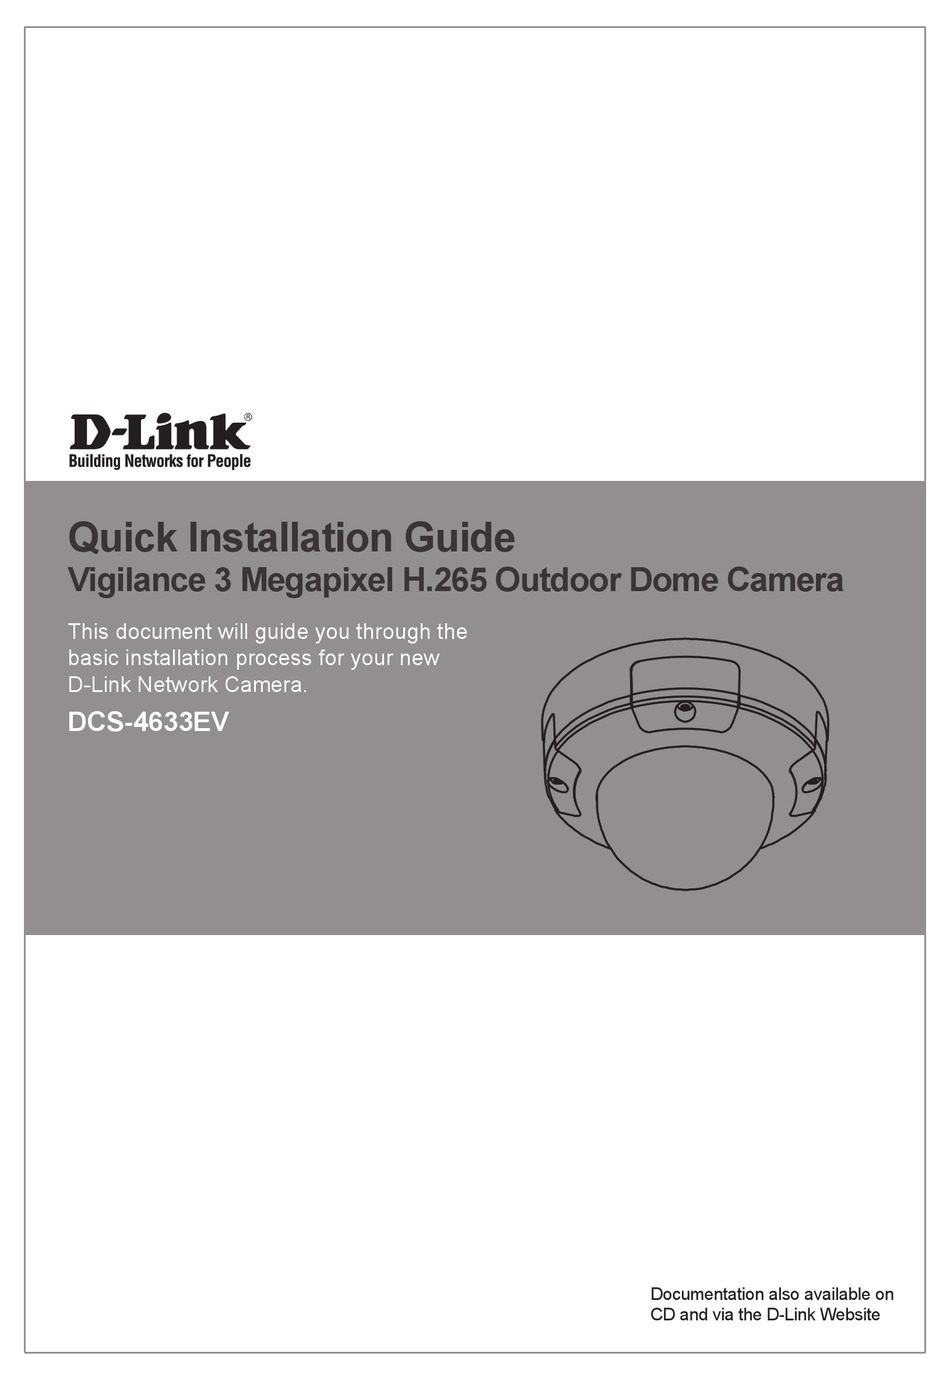 D-LINK DCS-4633EV QUICK INSTALLATION MANUAL Pdf Download | ManualsLib